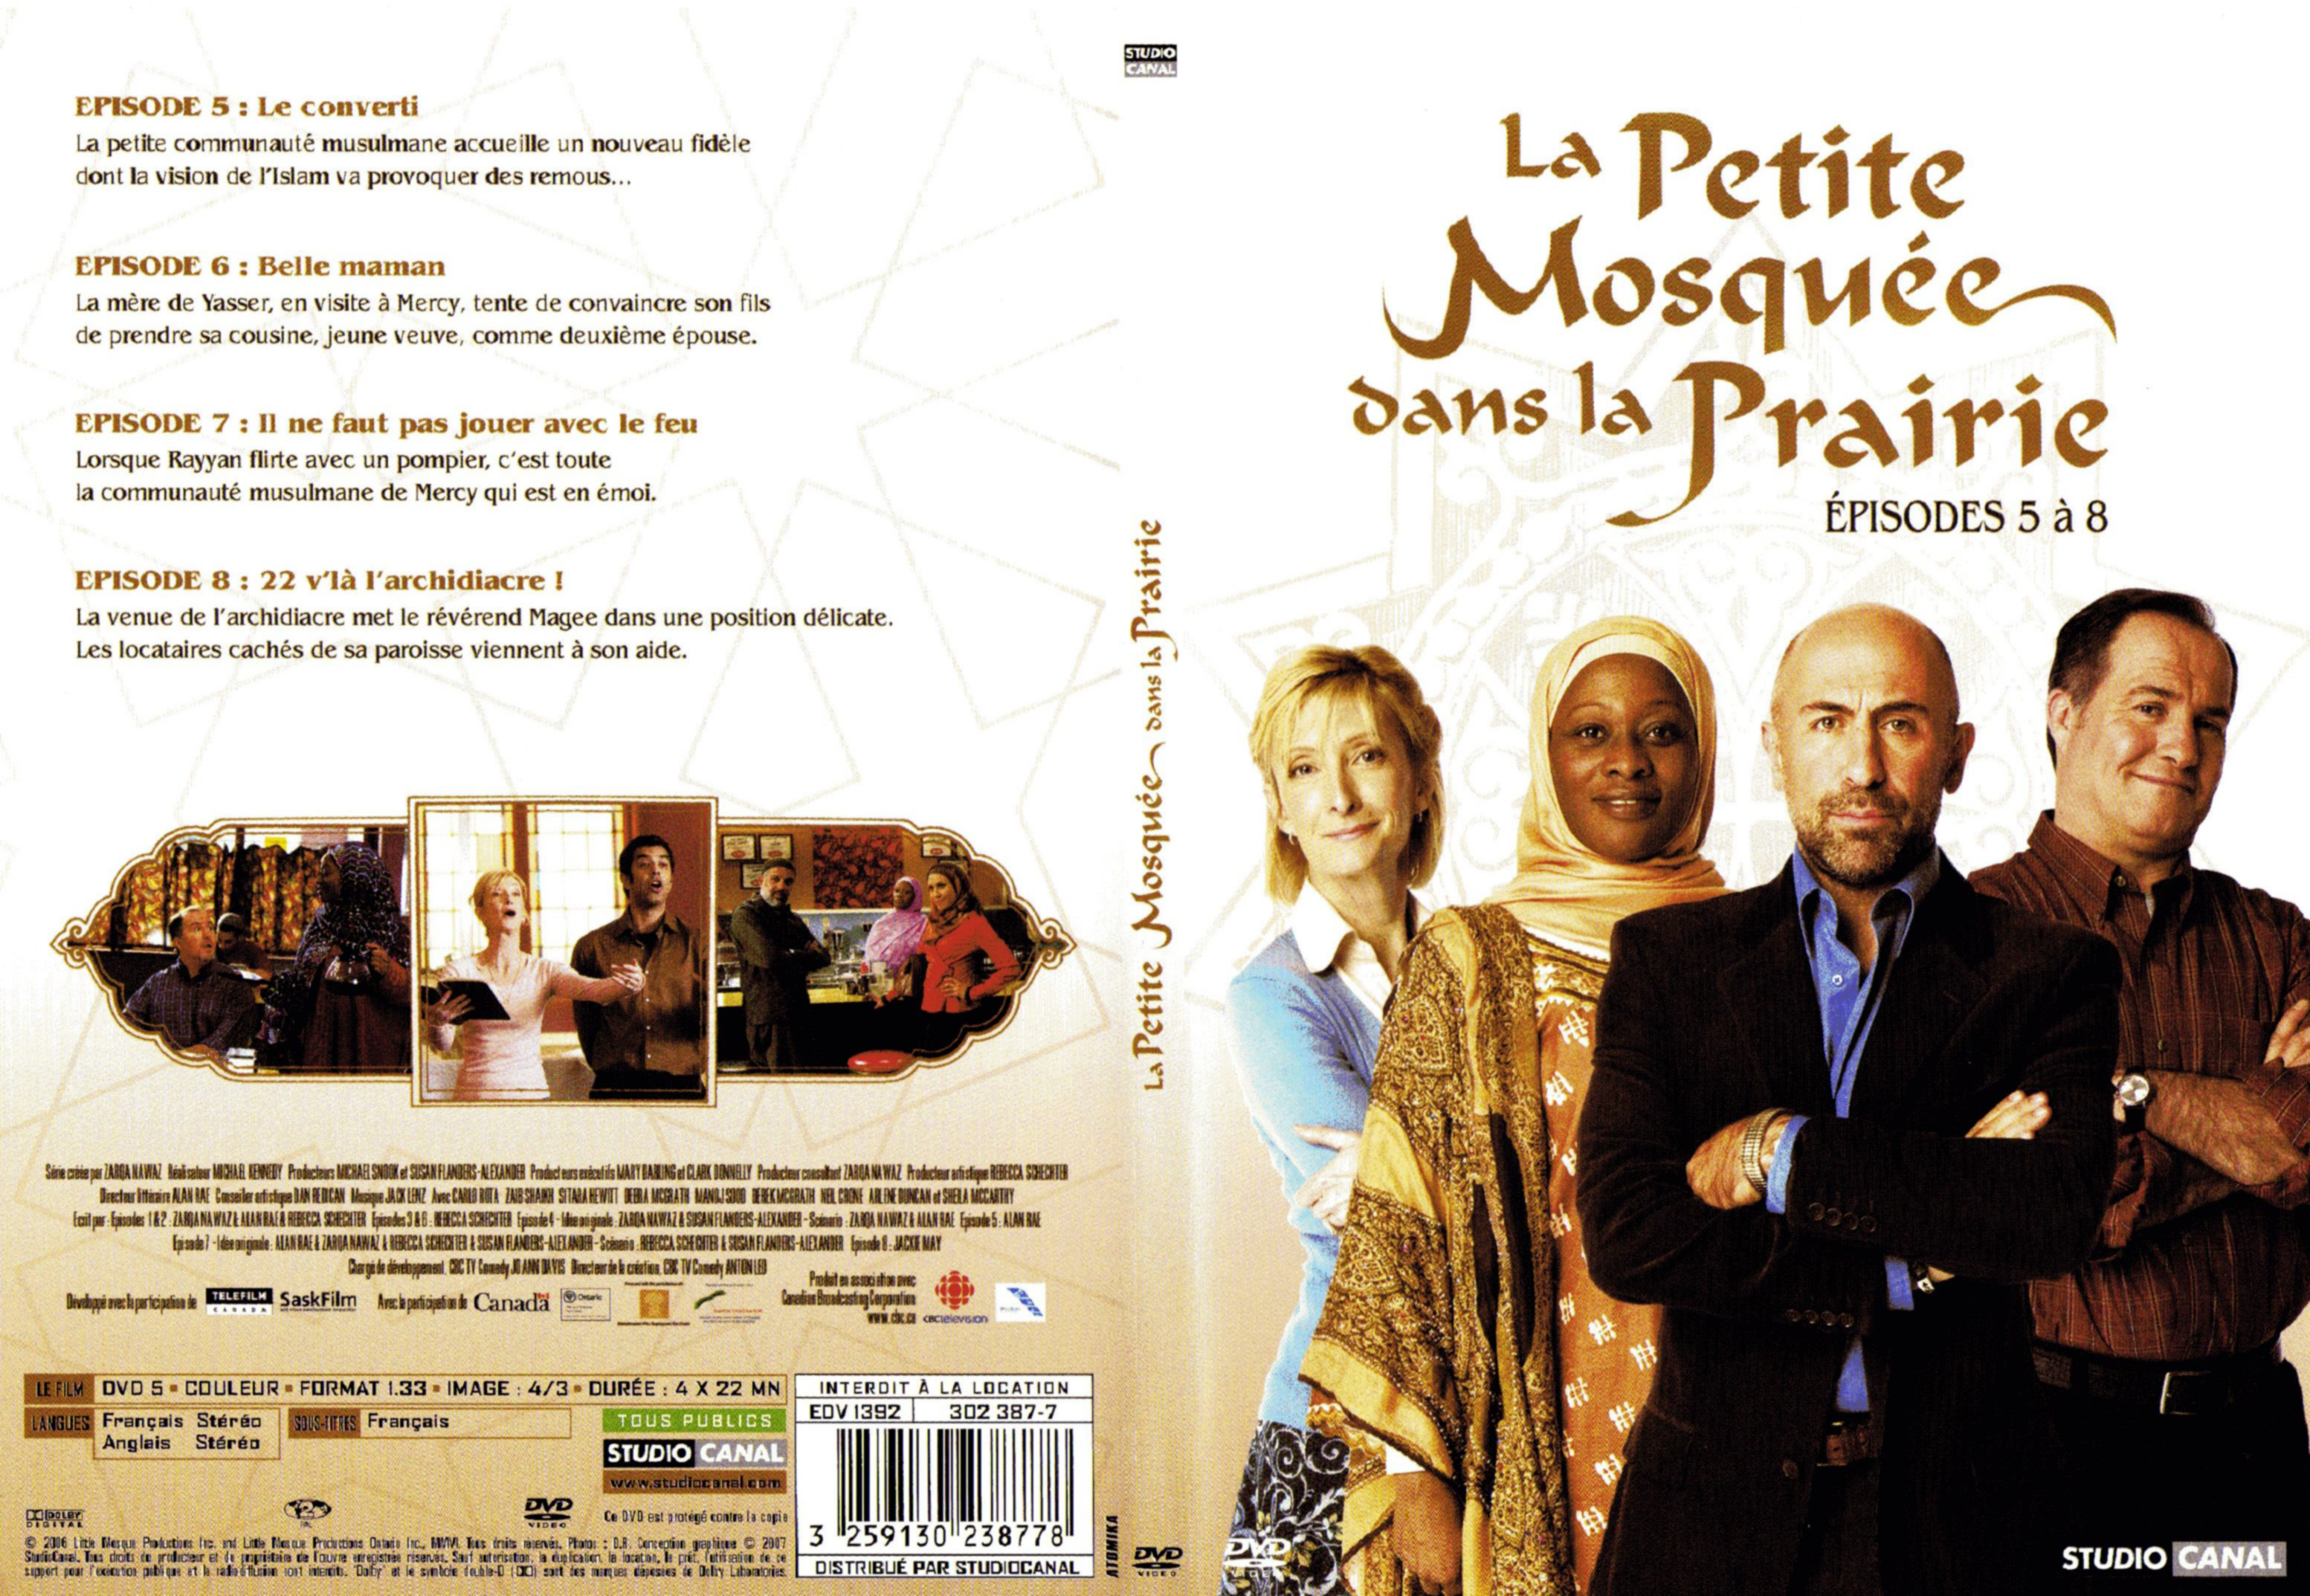 Jaquette DVD La petite mosque dans la prairie saison 1 DVD 2